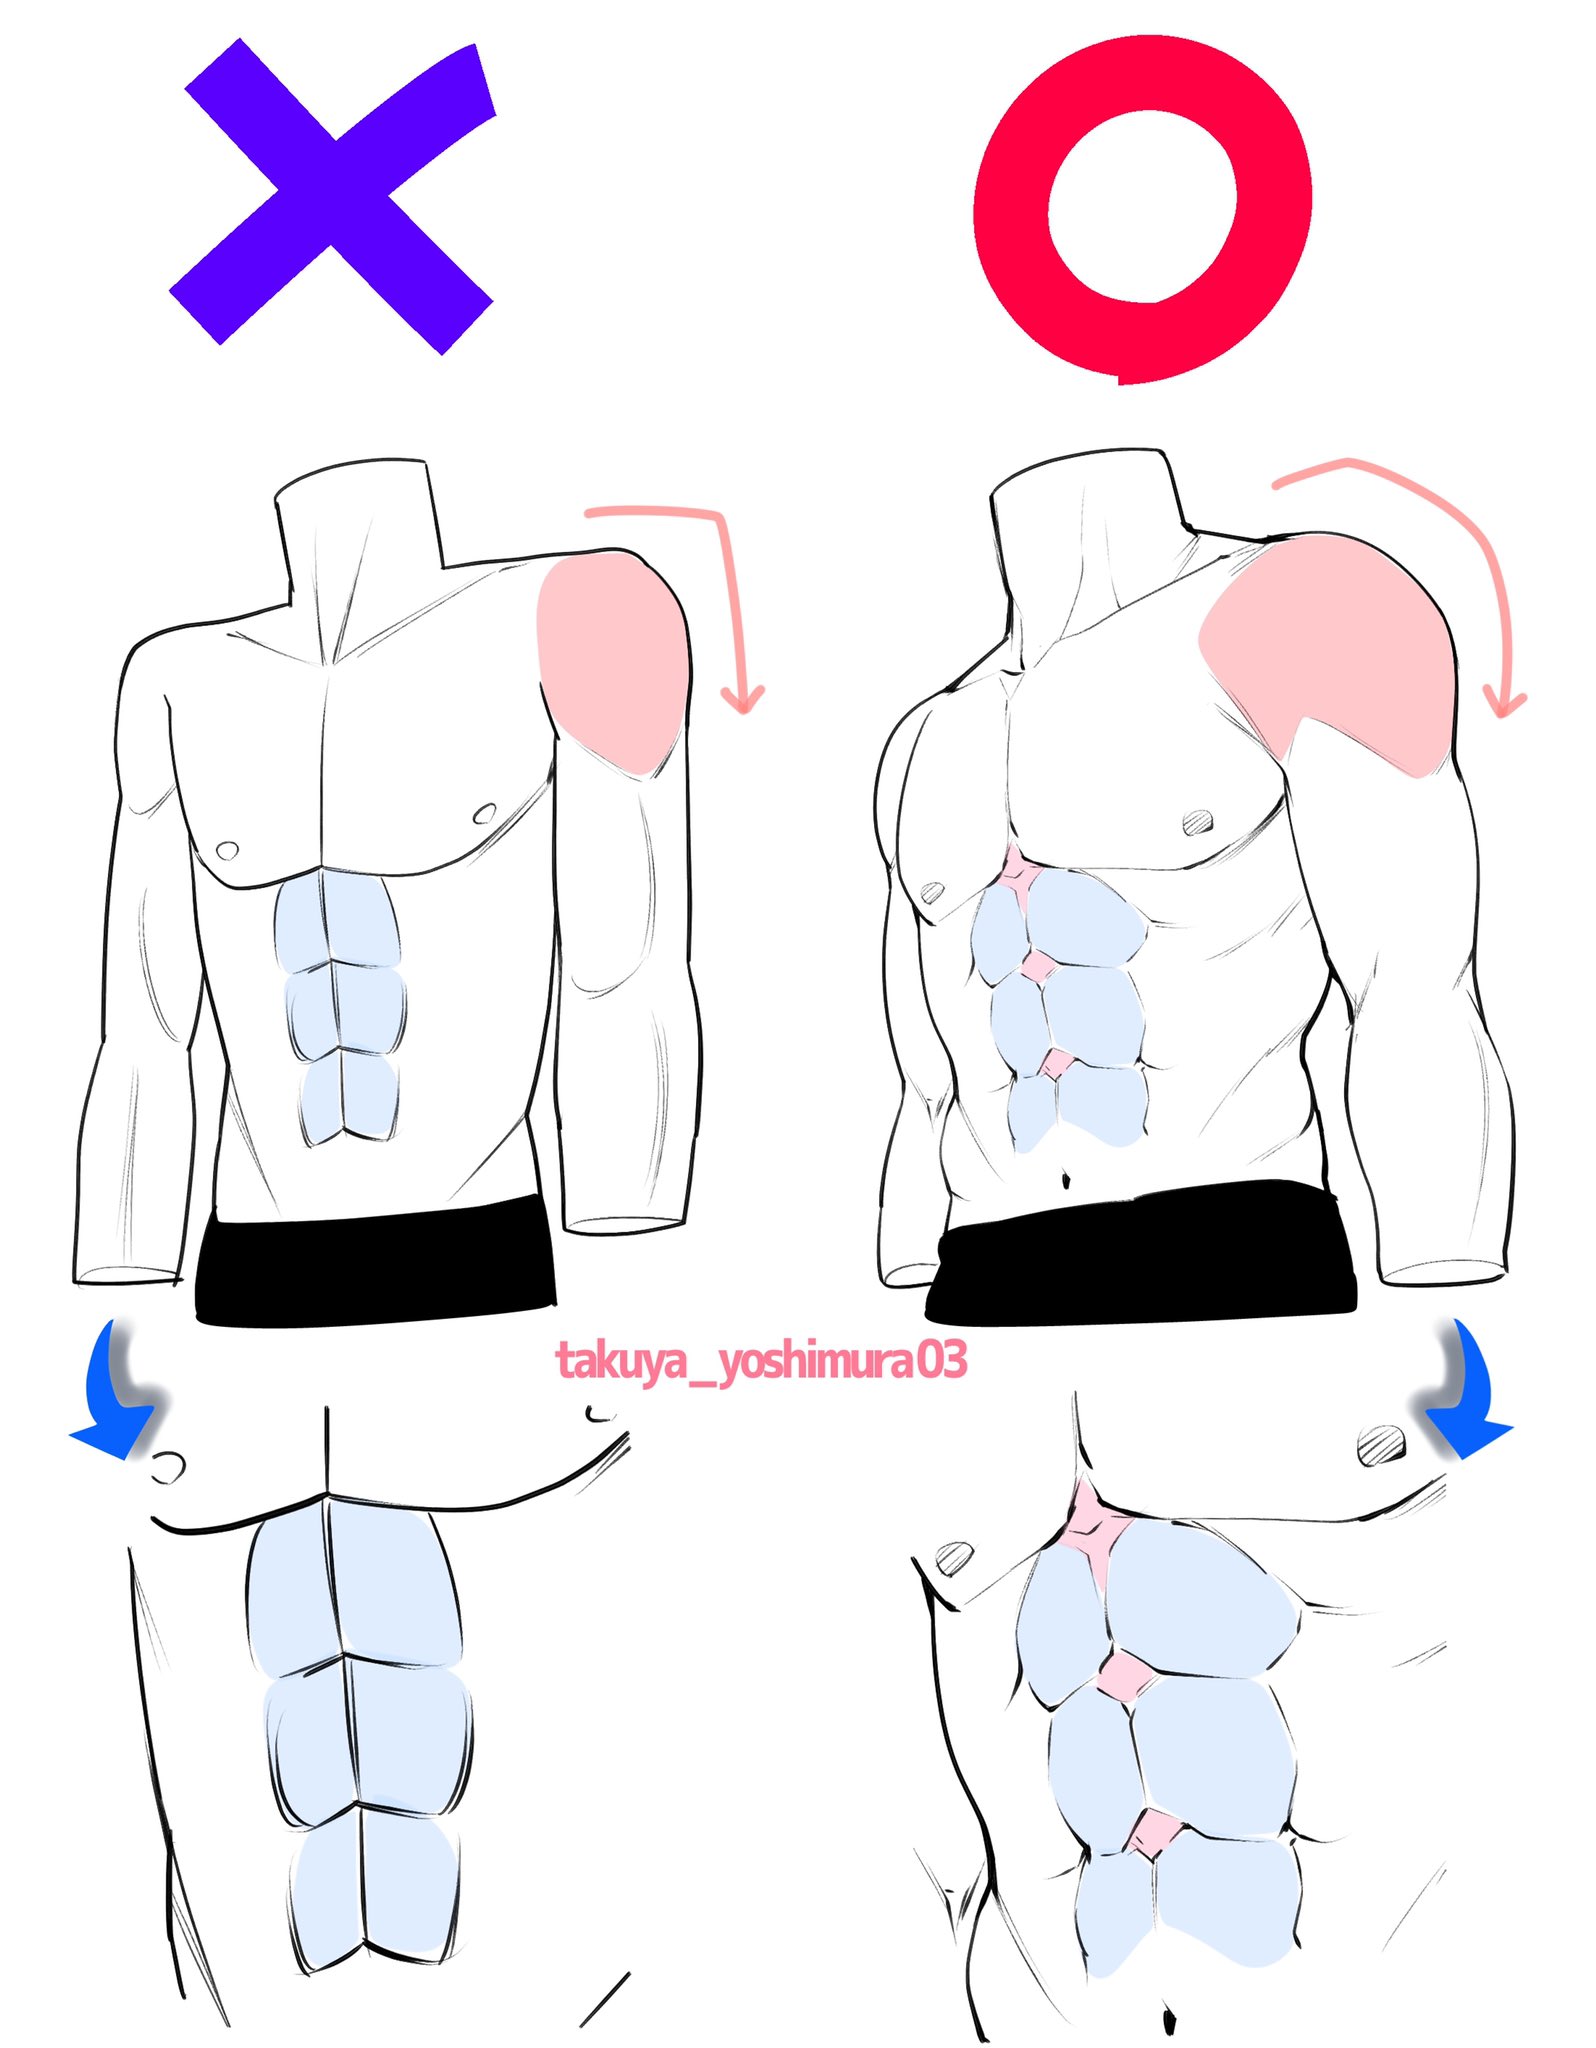 吉村拓也 イラスト講座 男性の筋肉パーツの描き方 パッと見てわかりやすい 筋肉の形 ダメかも と いいかも T Co Ahpm2fhfqo Twitter